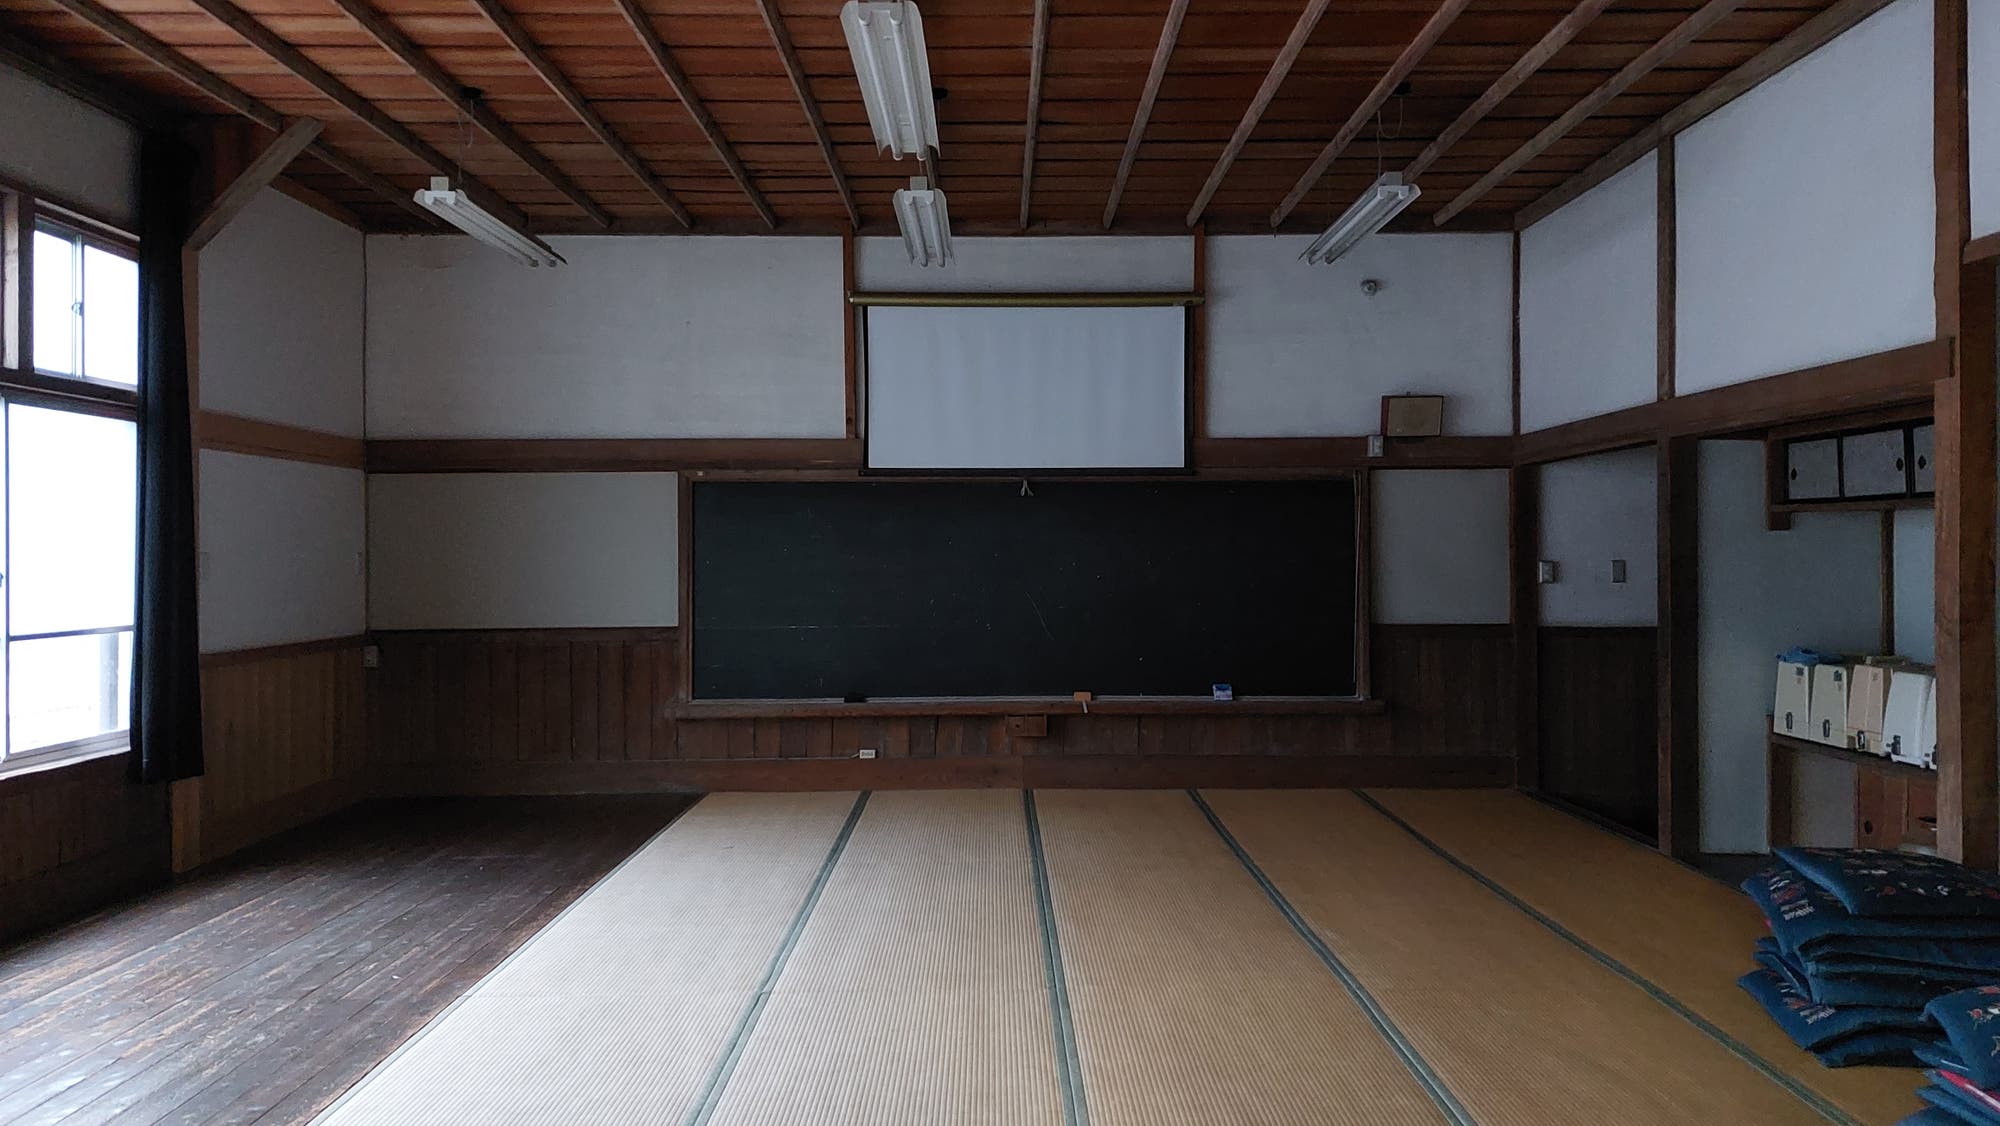 Der Raum, der mit Tatami-Matten ausgelegt ist, war ehemals ein Klassenzimmer. Heute wird dort erneut gelehrt: bei Seminaren zur traditionellen Teezeremonie.